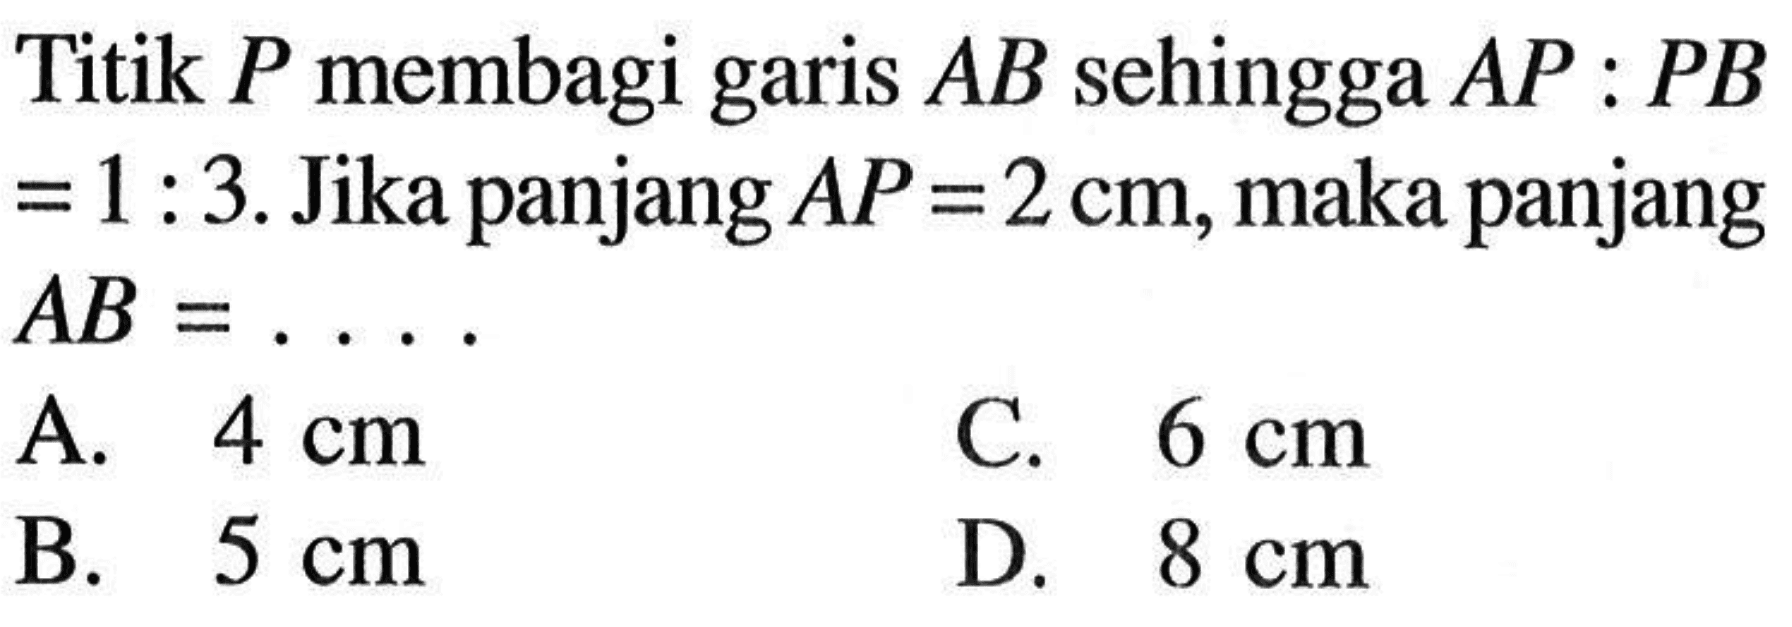 Titik P membagi garis AB sehingga AP:PB=1:3. Jika panjang AP=2 cm, maka panjang AB=...  